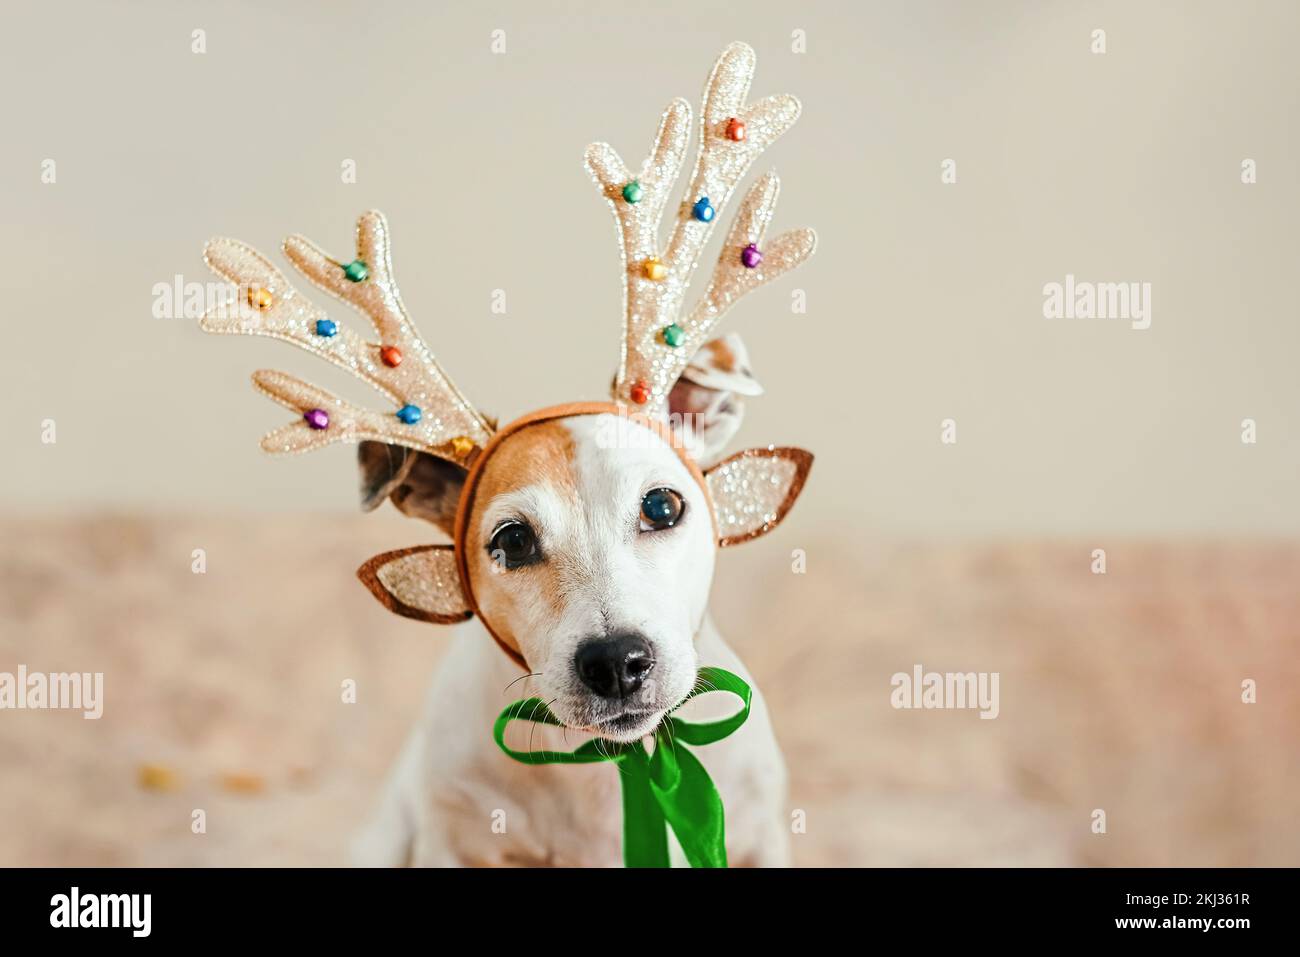 Portrait d'un chien de Noël avec des cornes de cerfs et un ruban vert, à l'intérieur. Concept de la nouvelle année et carte de vœux et de Noël Banque D'Images